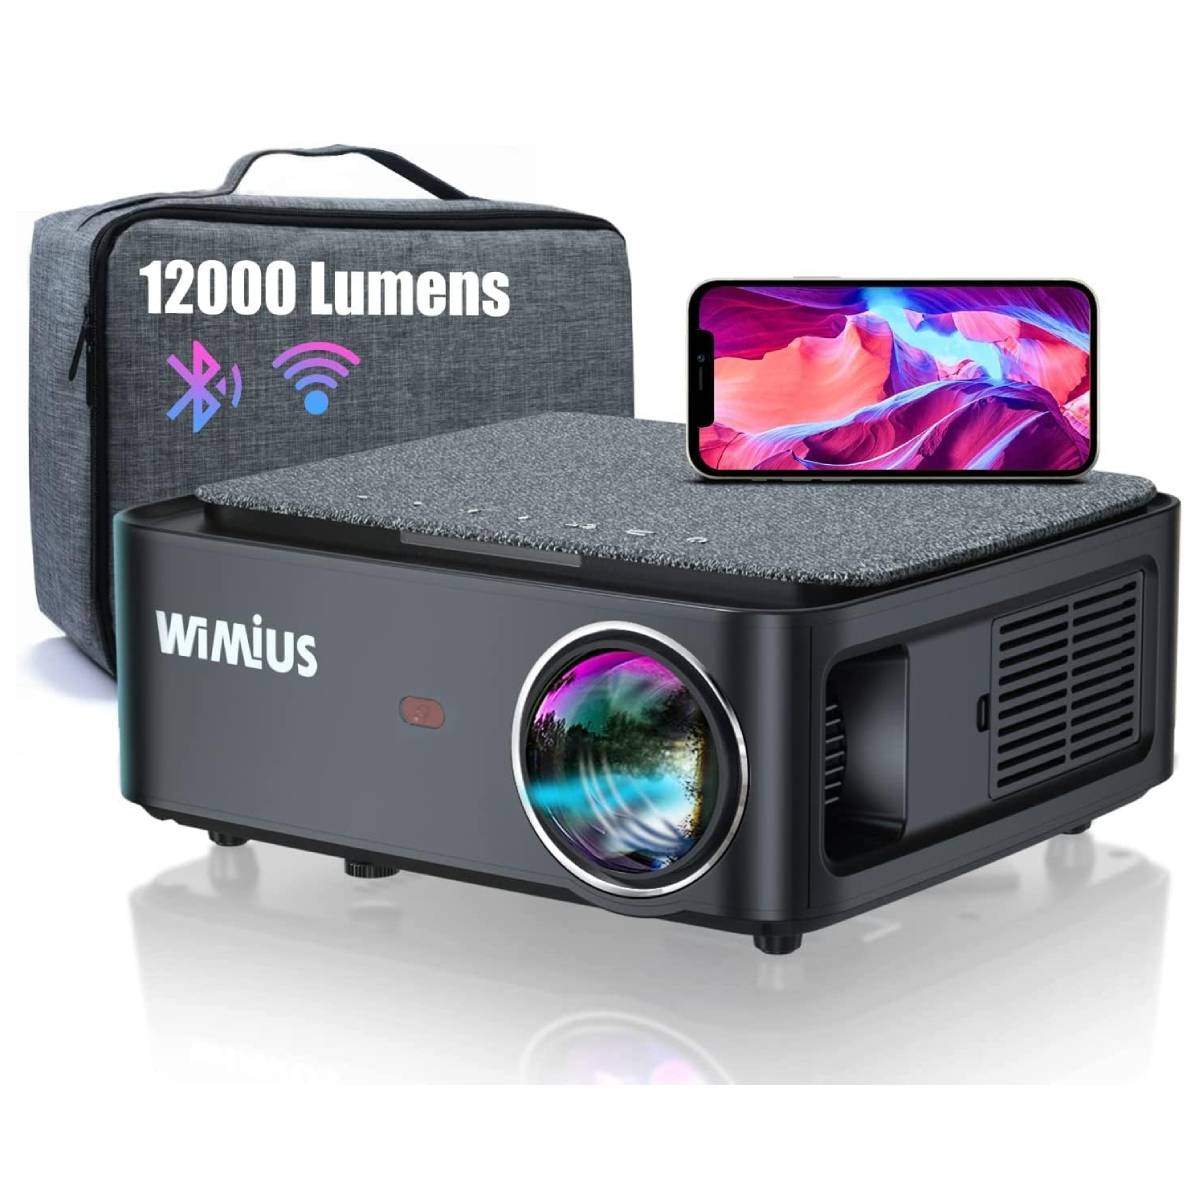 Gaudeix d'imatges i so de qualitat amb el Projector WiMiUS 4K al 40% de descompte a Amazon